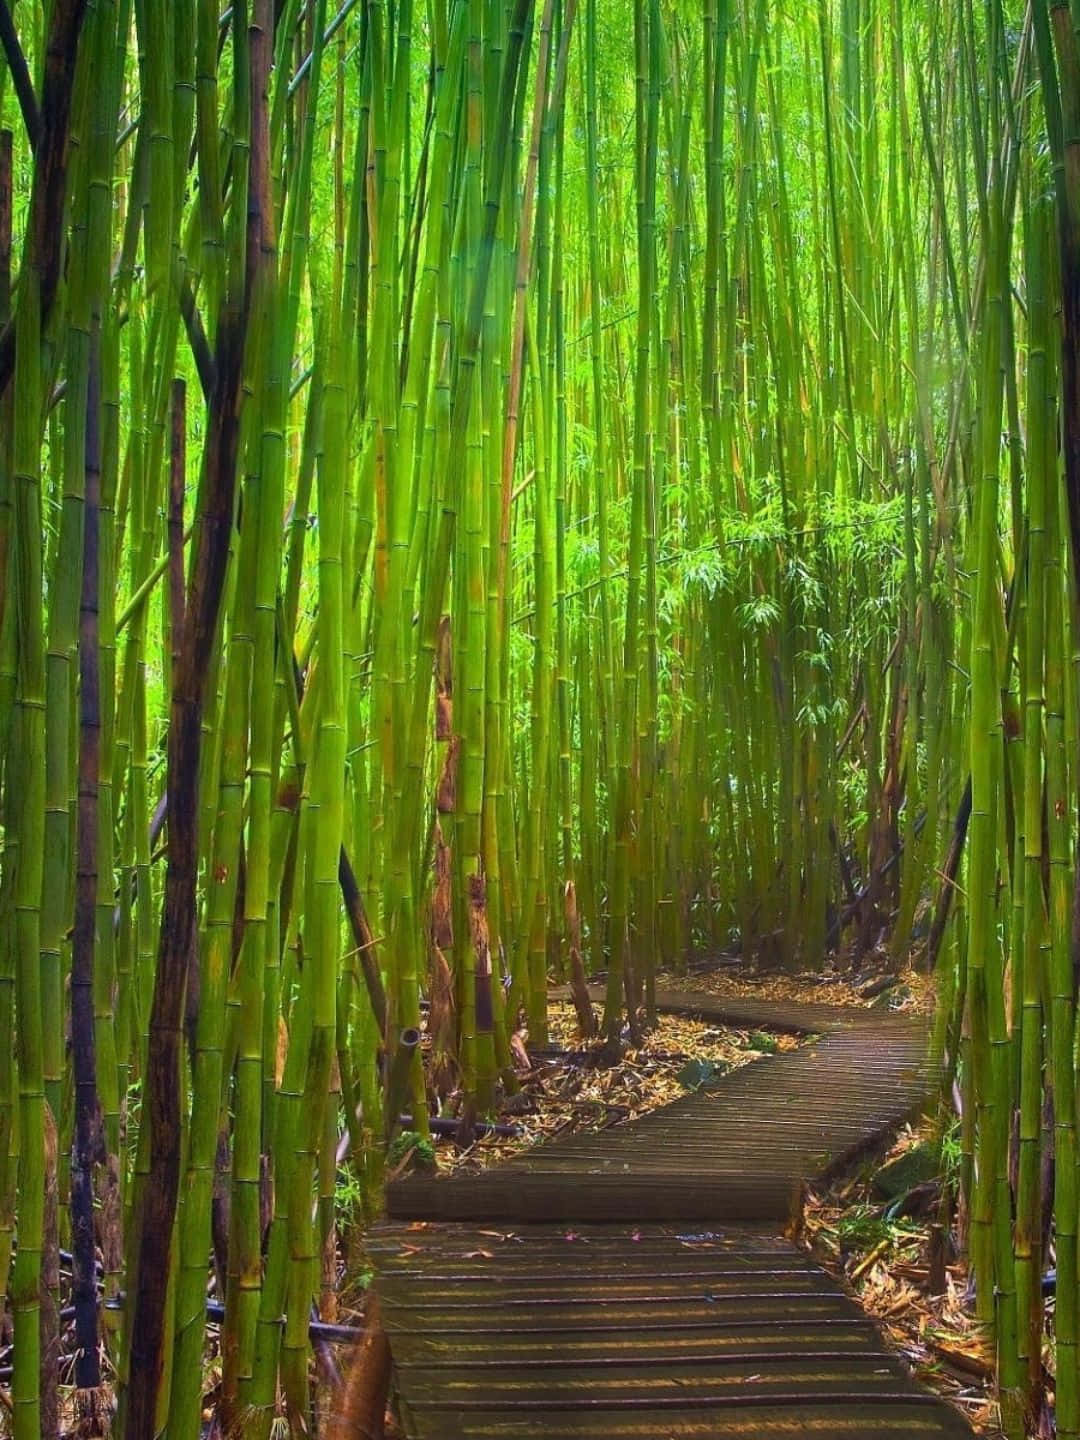 Papelde Parede De Bambu 1440p - Caminho De Madeira Rodeado Por Árvores De Bambu.